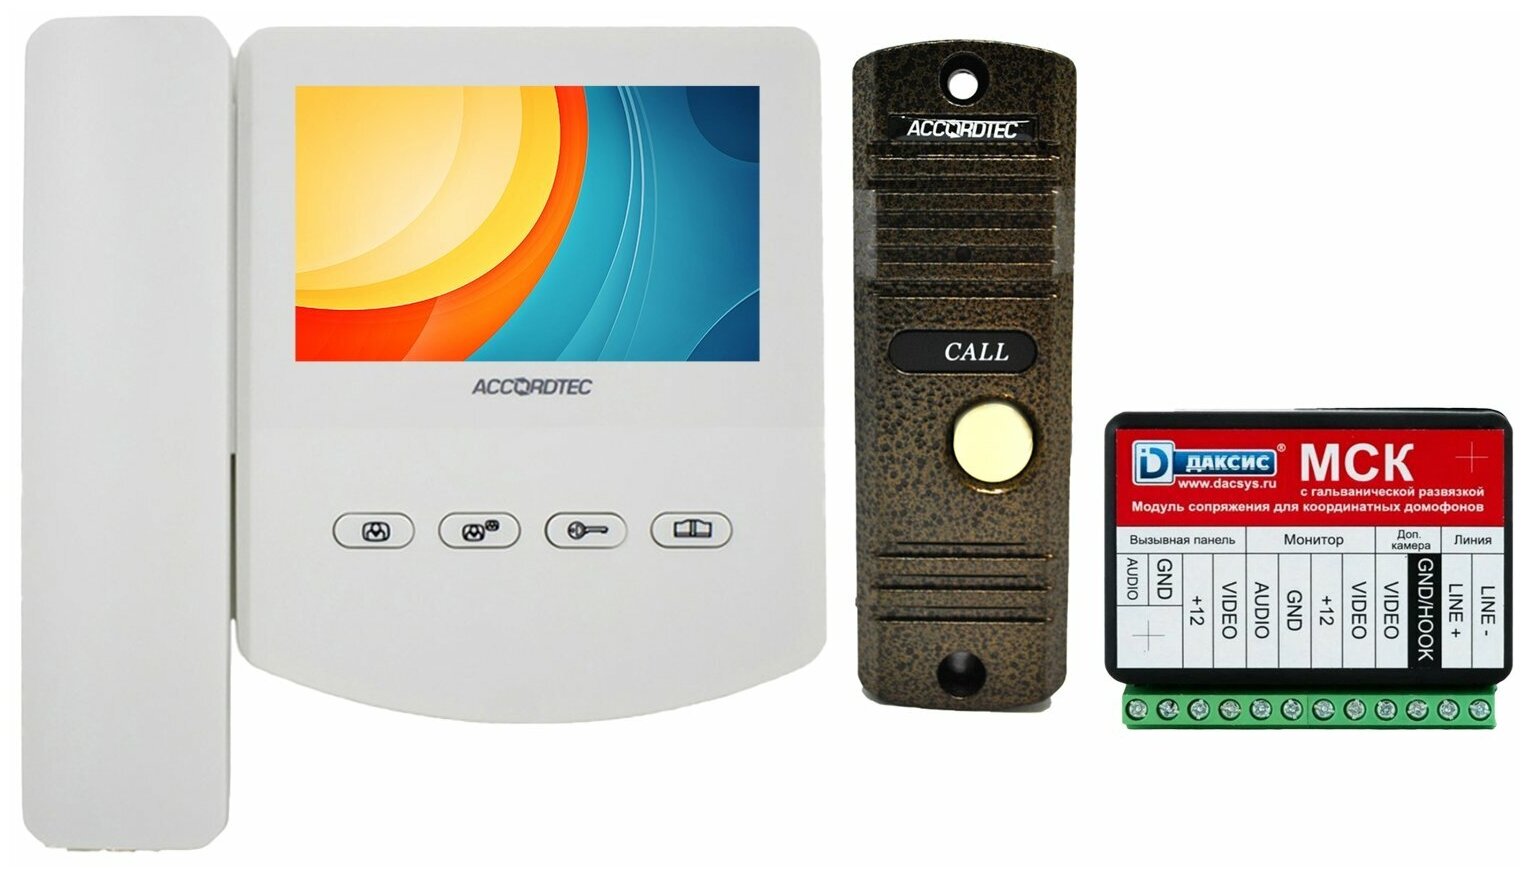 Комплект видеодомофона AccordTec AT-VD 433C / AT-VD305N BZ / Даксис МСК с подключением к системам (Даксис, Визит, Цифрал, Элтис, Метаком)